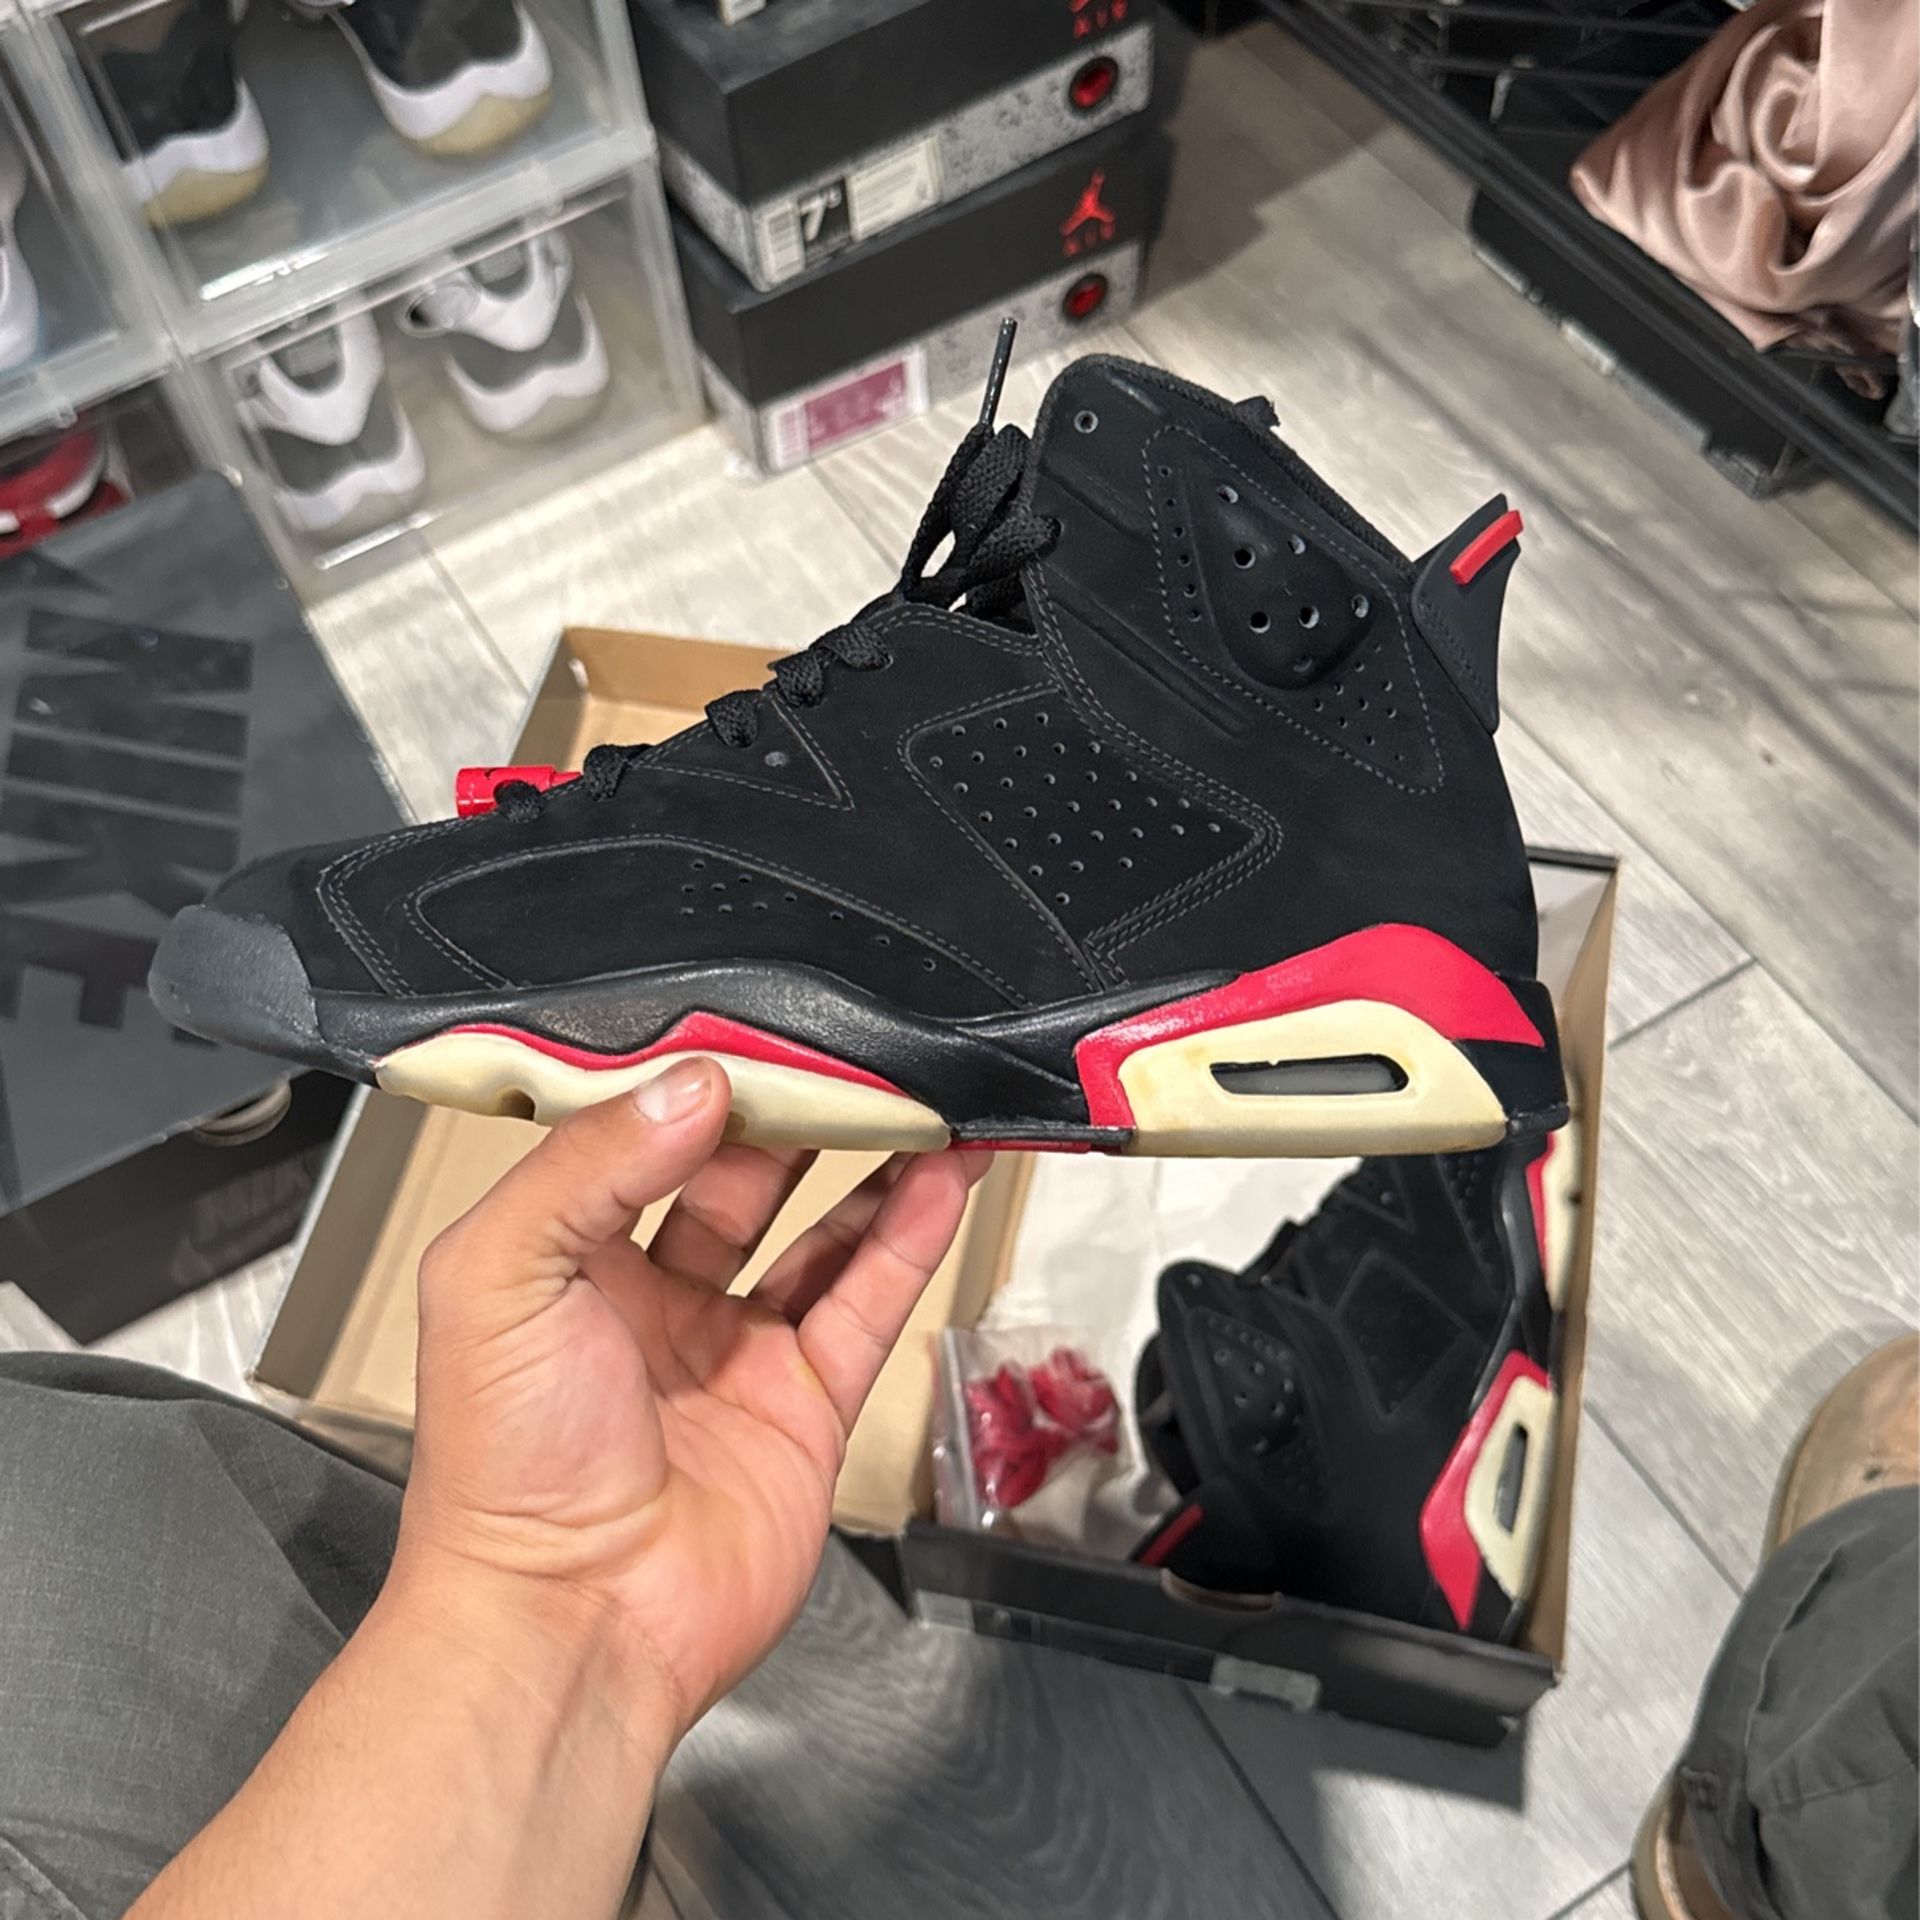 Jordan size 8